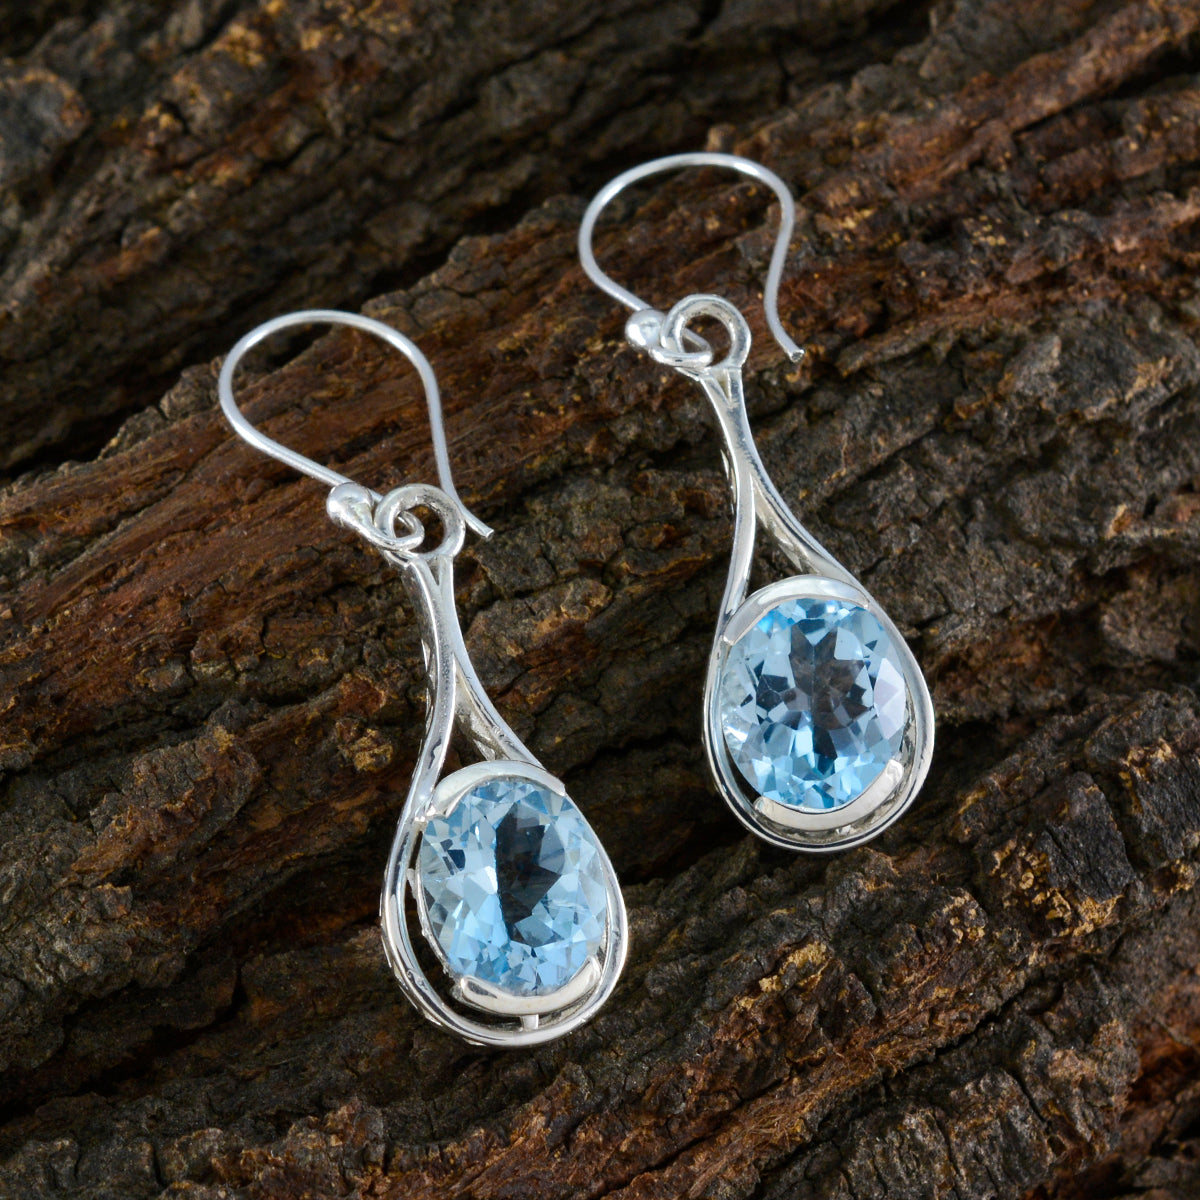 riyo splendido orecchino in argento sterling per la sorella orecchino con topazio blu con castone orecchino blu orecchino pendente